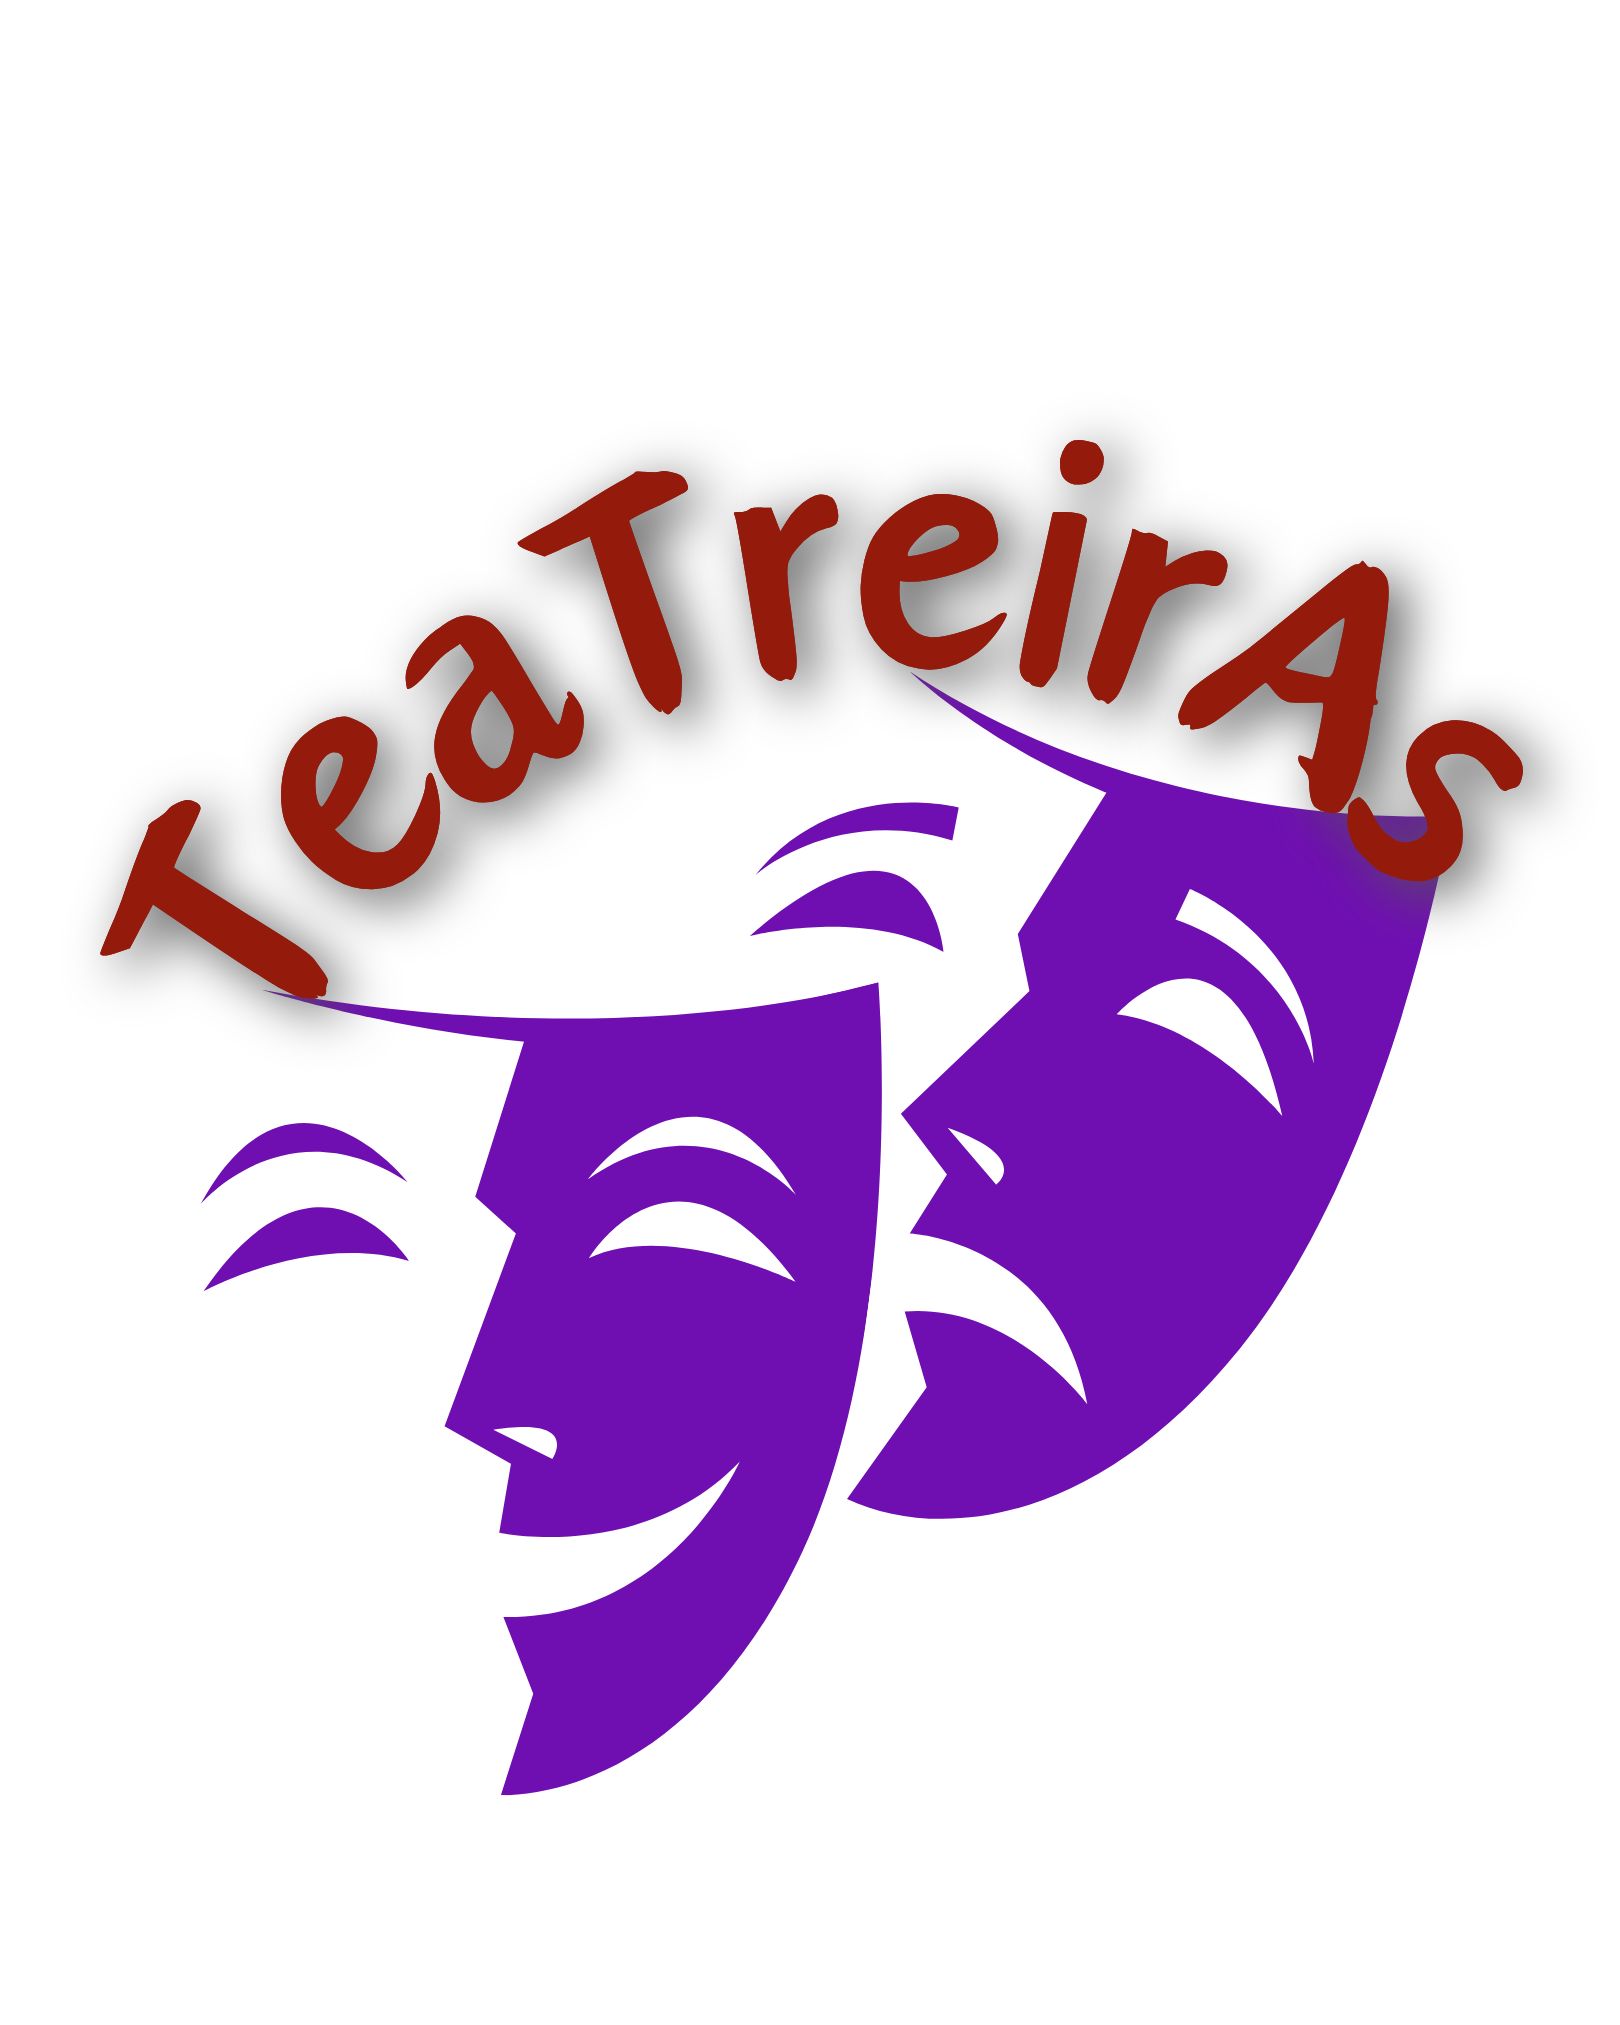 Imagem com o logotipo "Teatreiras" em vermelho e logo abaixo estão as máscaras do teatro, representando a comédia e a tragédia.